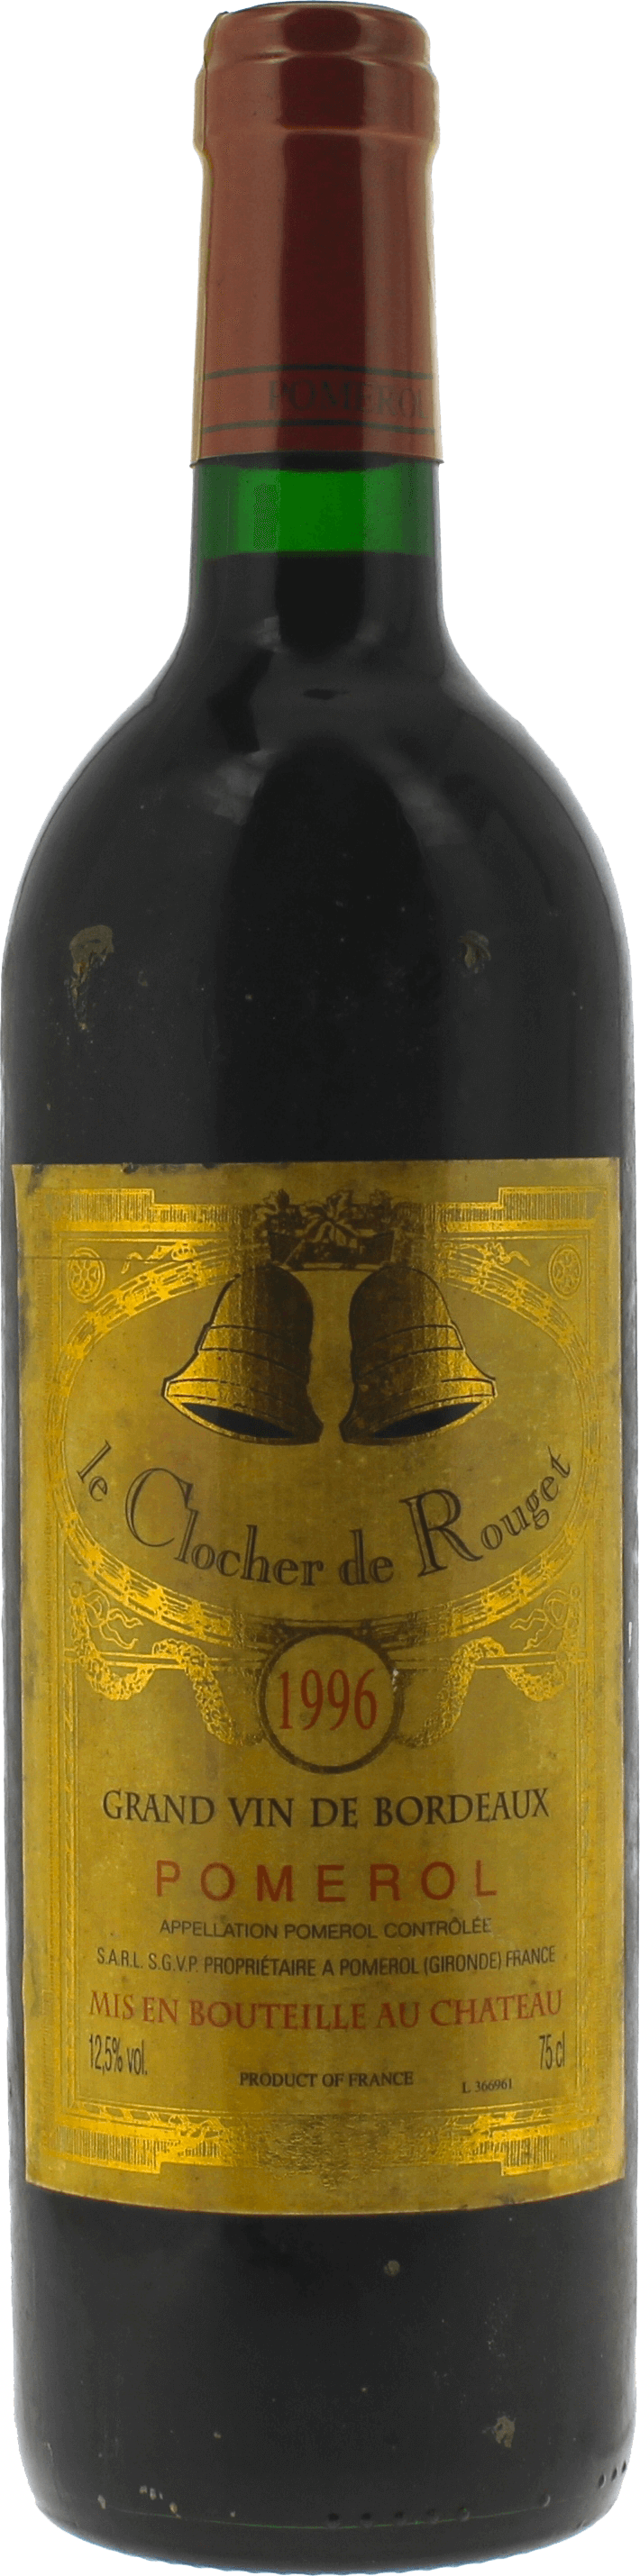 Clocher de rouget 1996  Pomerol, Bordeaux rouge